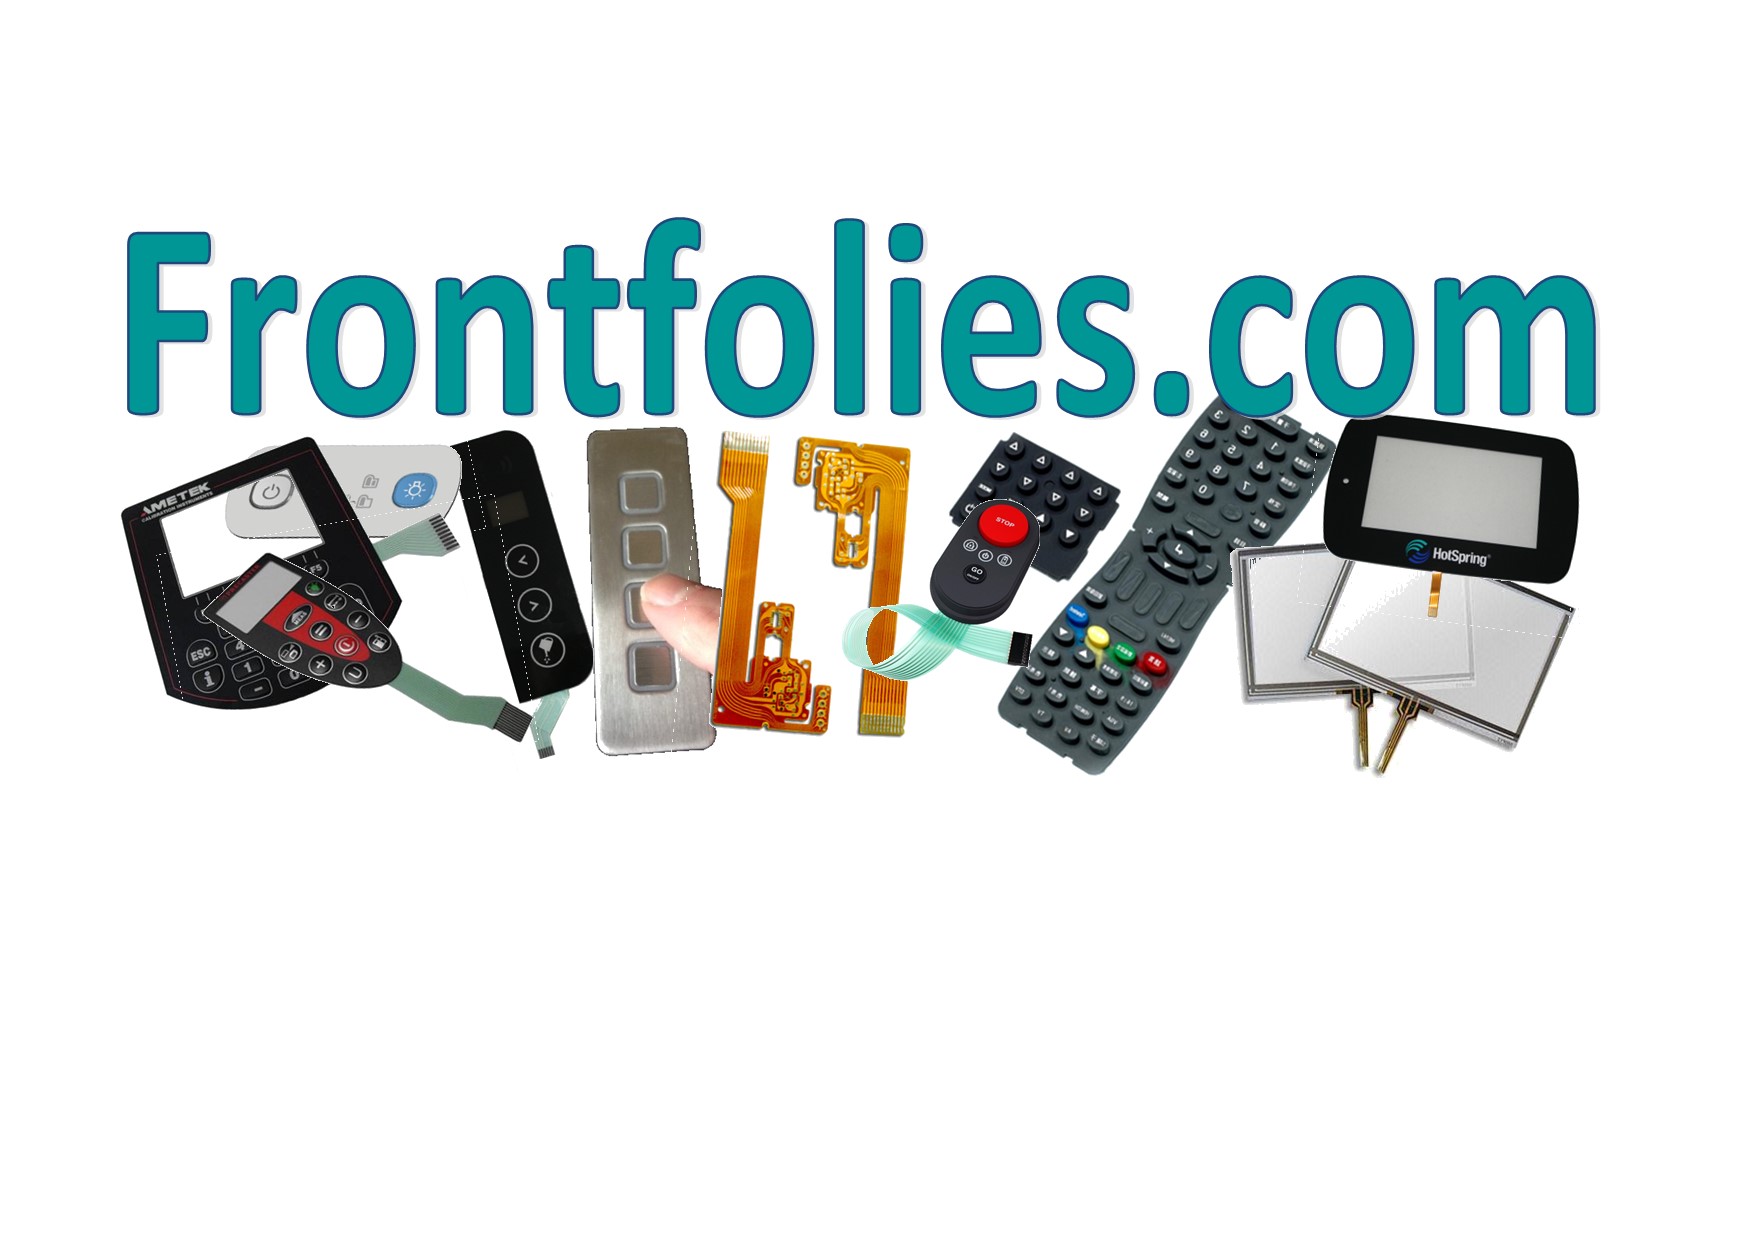 Frontfolies.com